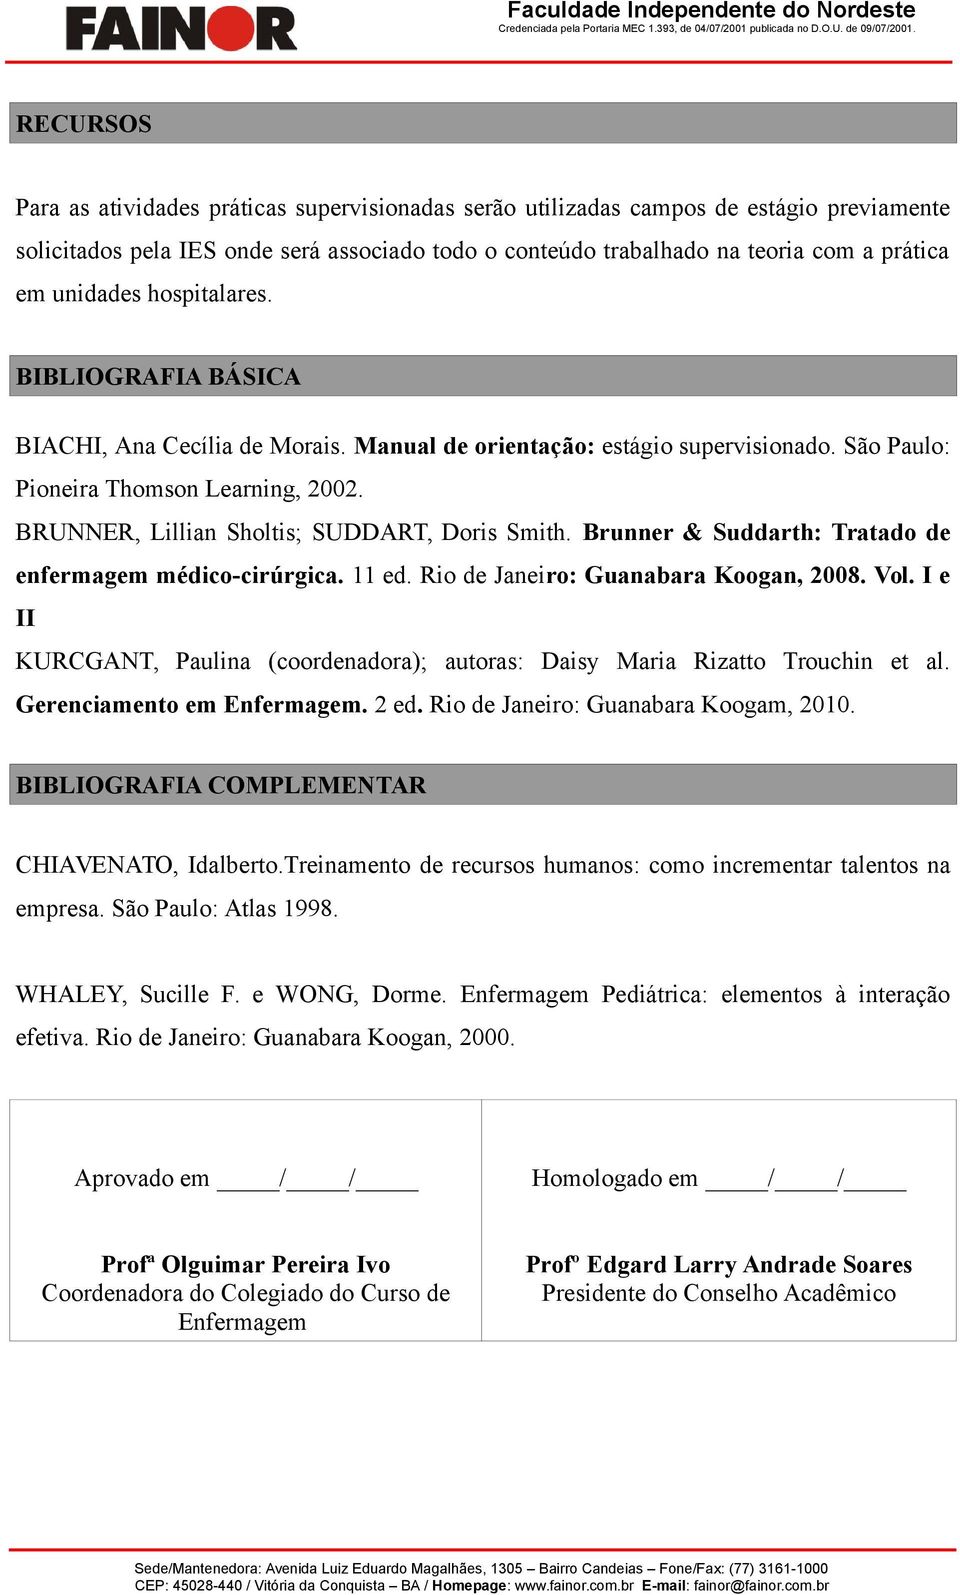 BRUNNER, Lillian Sholtis; SUDDART, Doris Smith. Brunner & Suddarth: Tratado de enfermagem médico-cirúrgica. 11 ed. Rio de Janeiro: Guanabara Koogan, 2008. Vol.